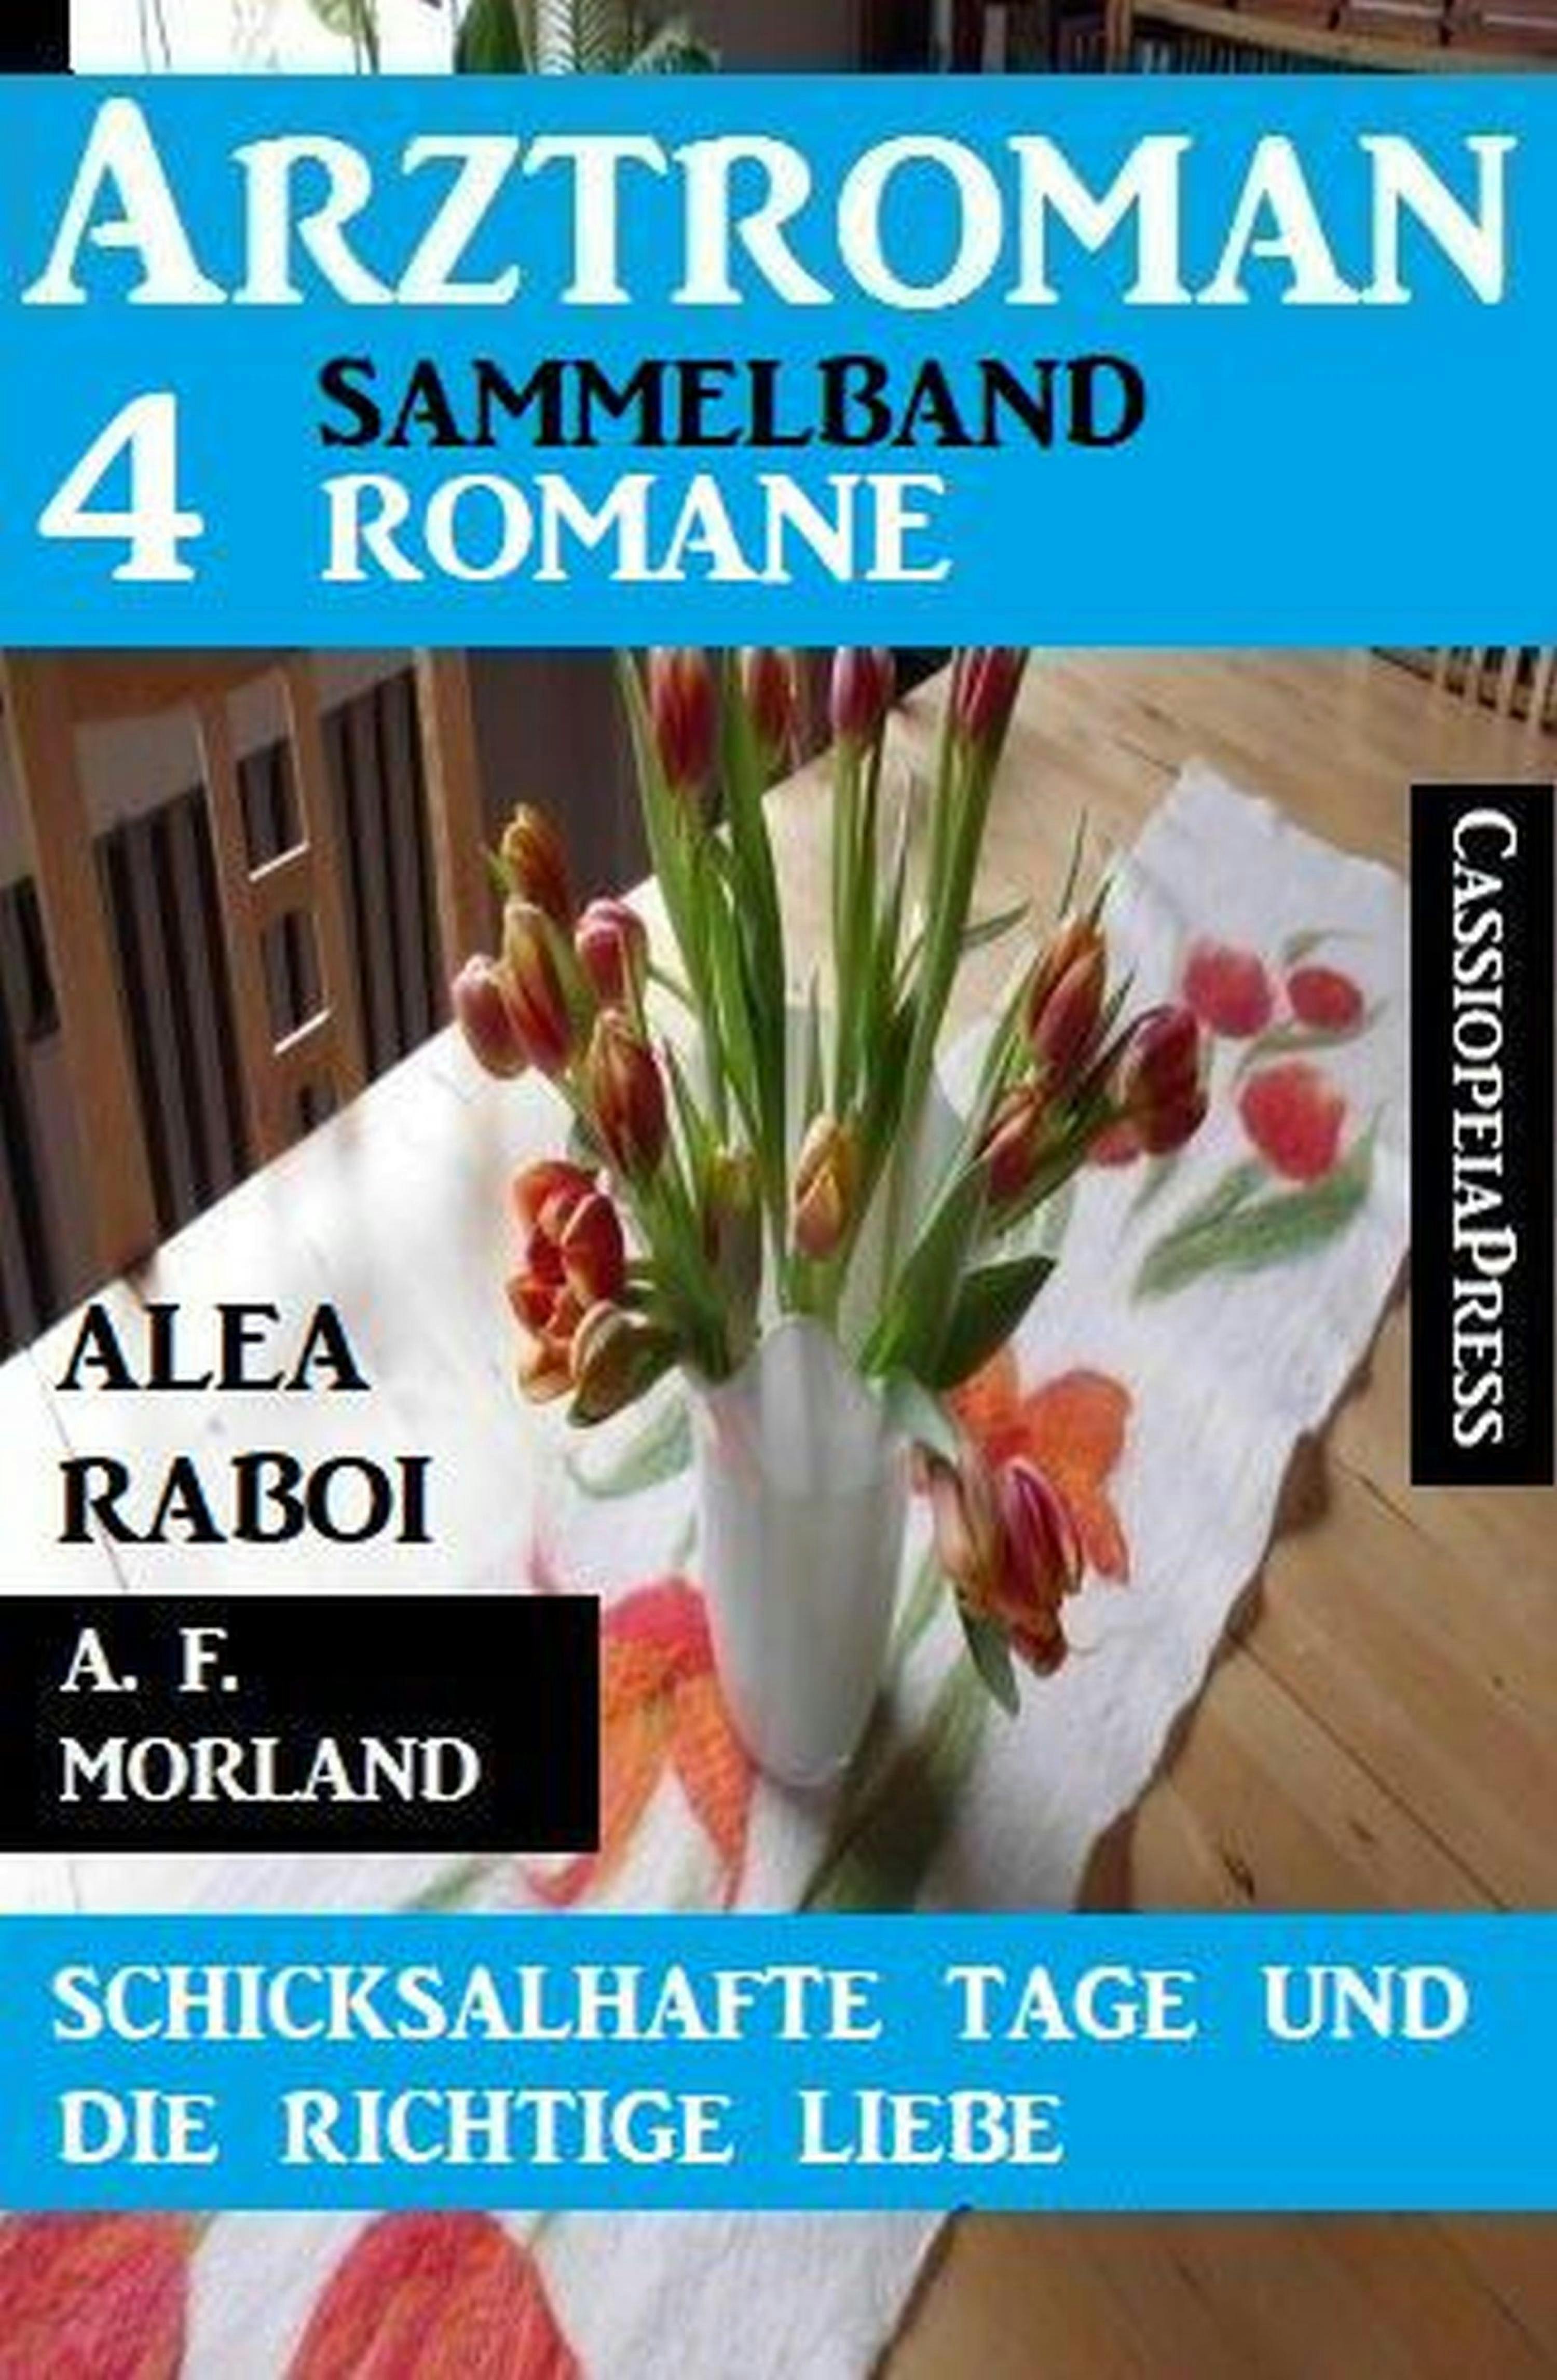 Schicksalhafte Tage und die richtige Liebe: Arztroman Sammelband 4 Romane - Alea Raboi, A. F. Morland